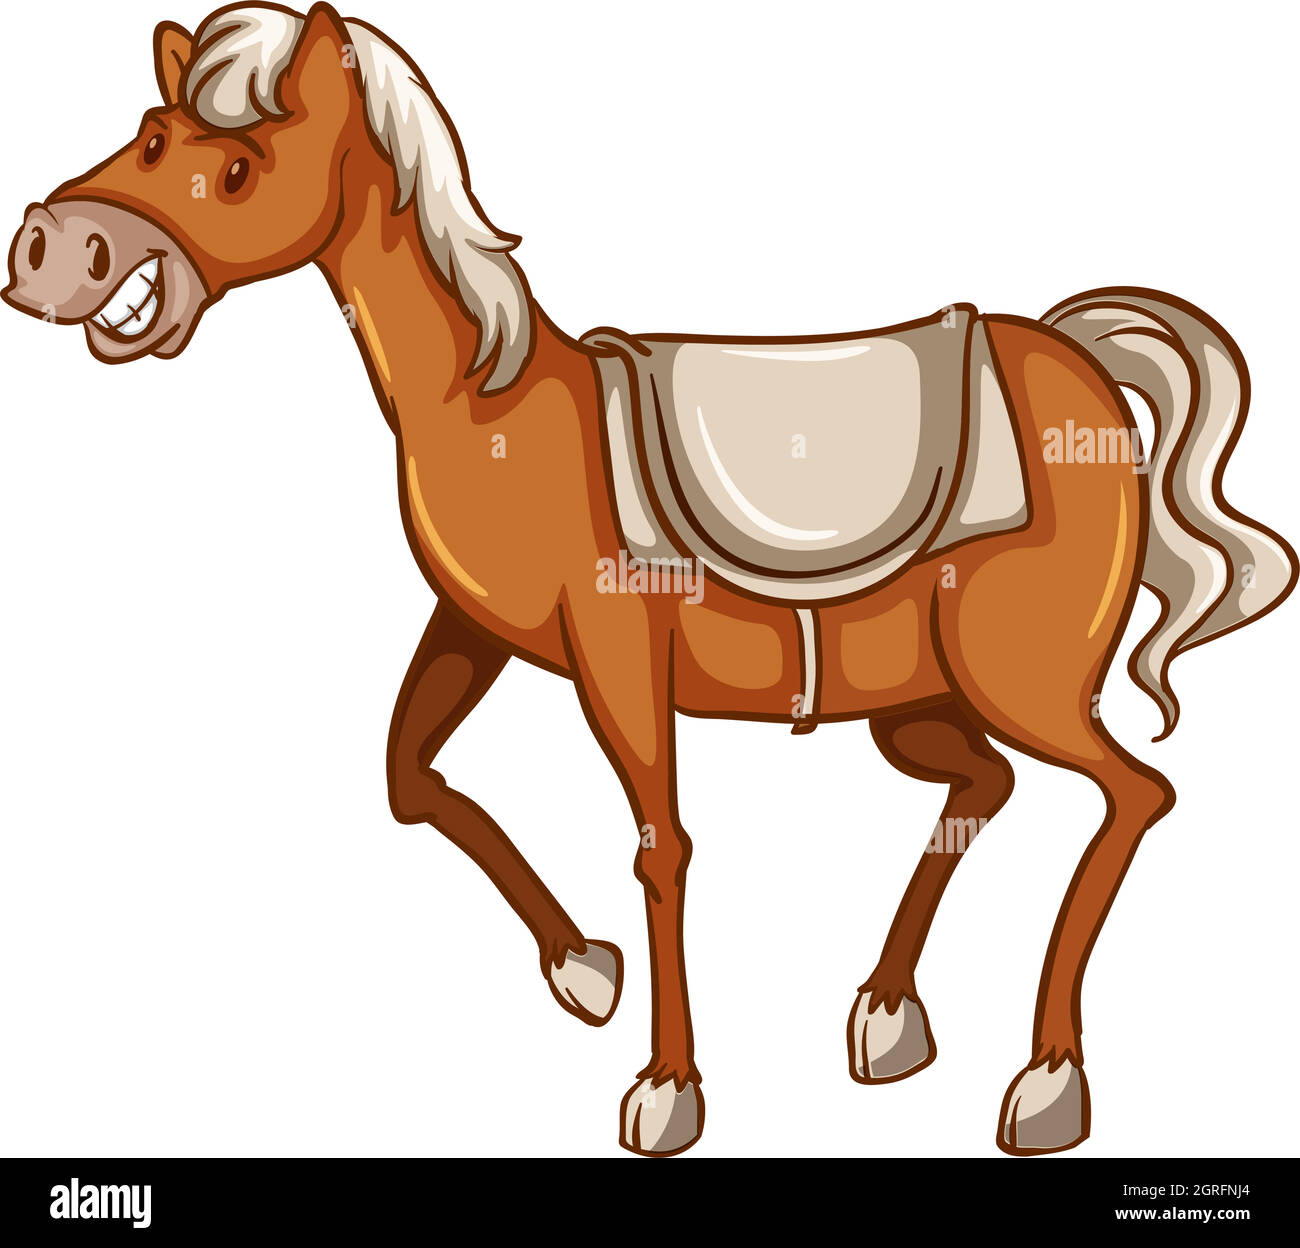 A cowboy's horse Stock Vector